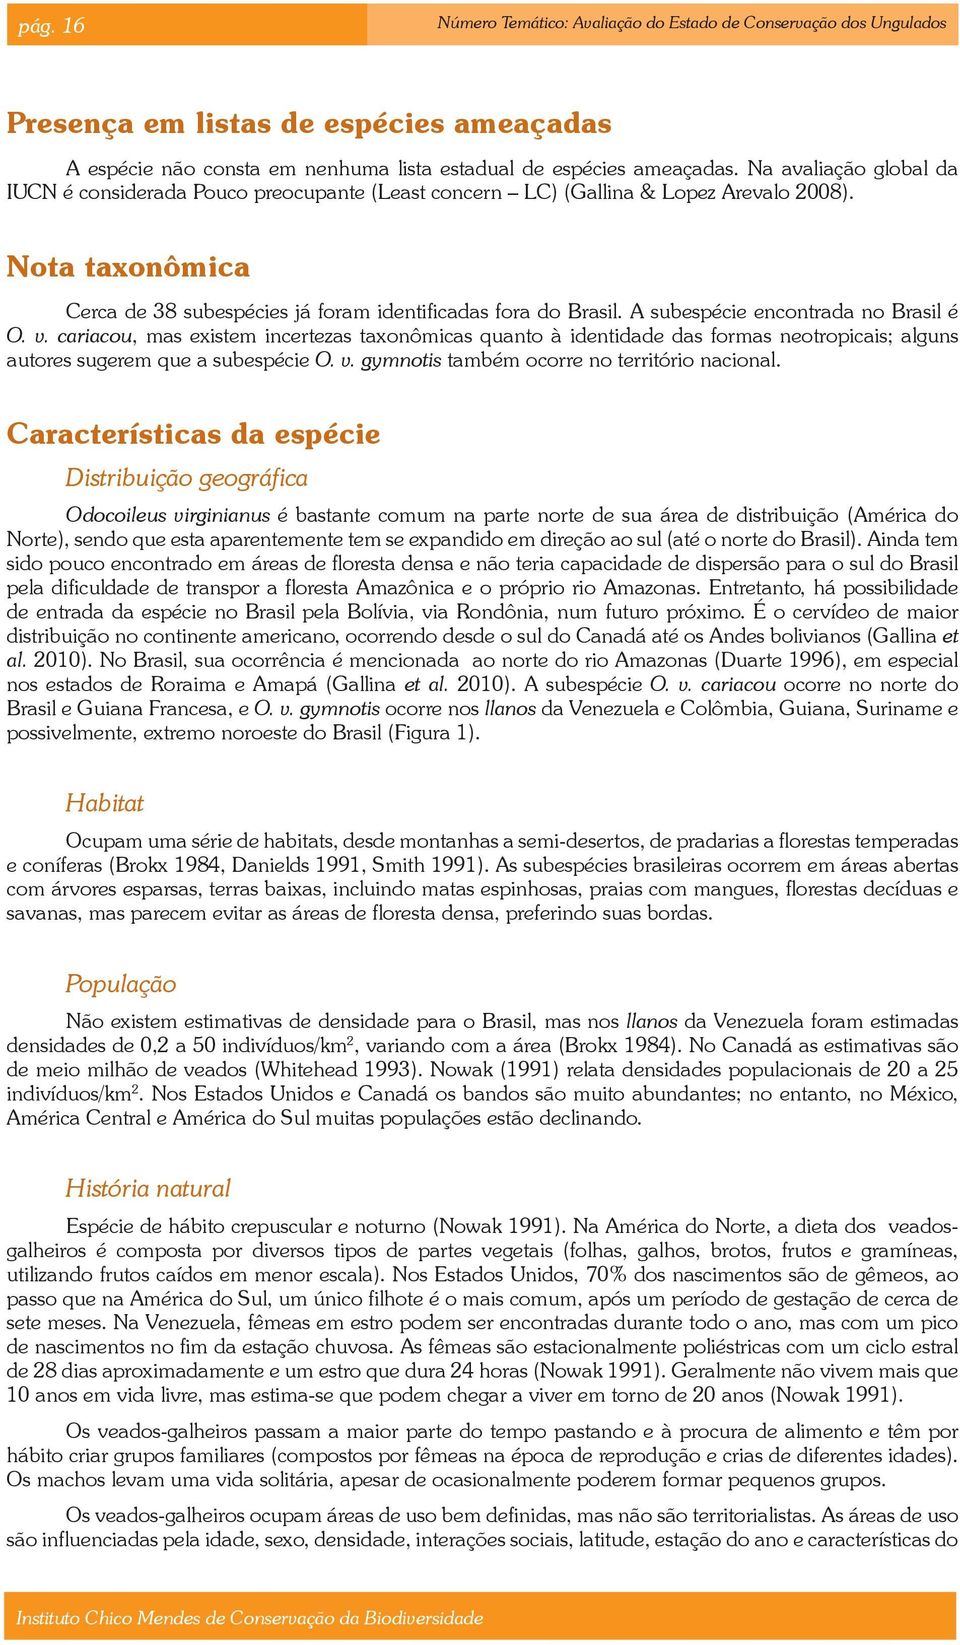 A subespécie encontrada no Brasil é O. v. cariacou, mas existem incertezas taxonômicas quanto à identidade das formas neotropicais; alguns autores sugerem que a subespécie O. v. gymnotis também ocorre no território nacional.